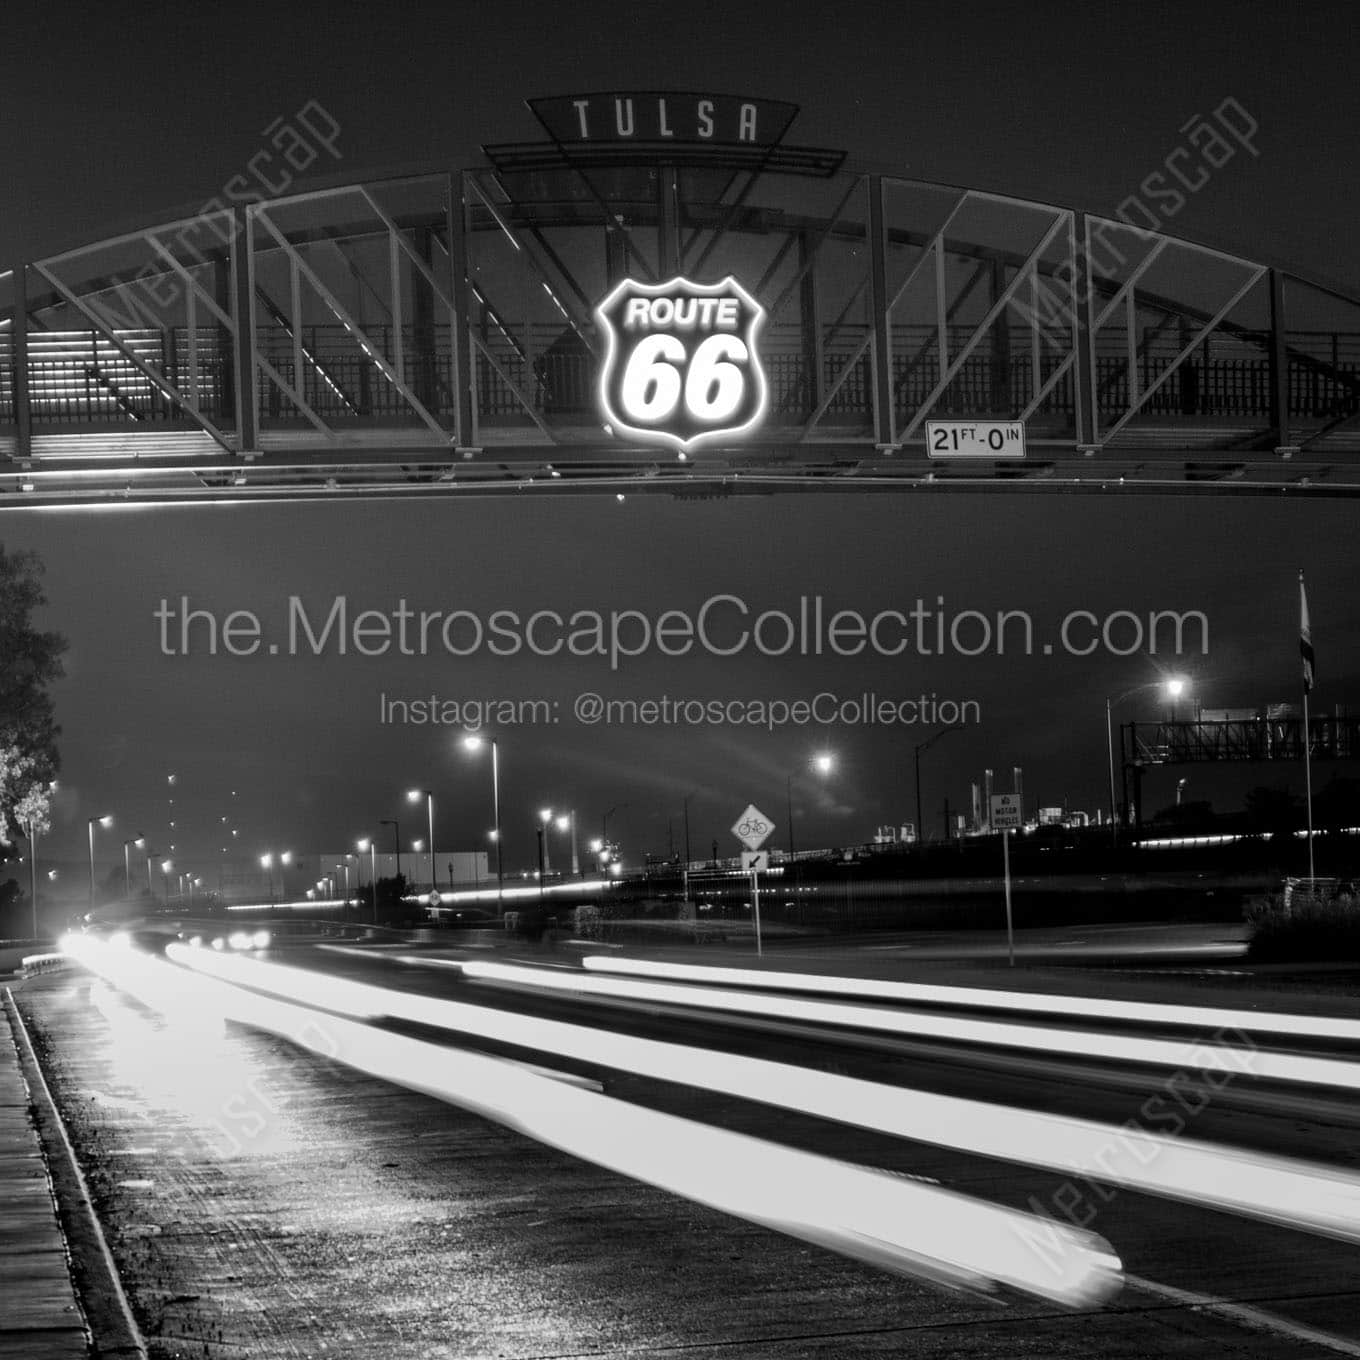 route 66 through tulsa oklahoma Black & White Office Art